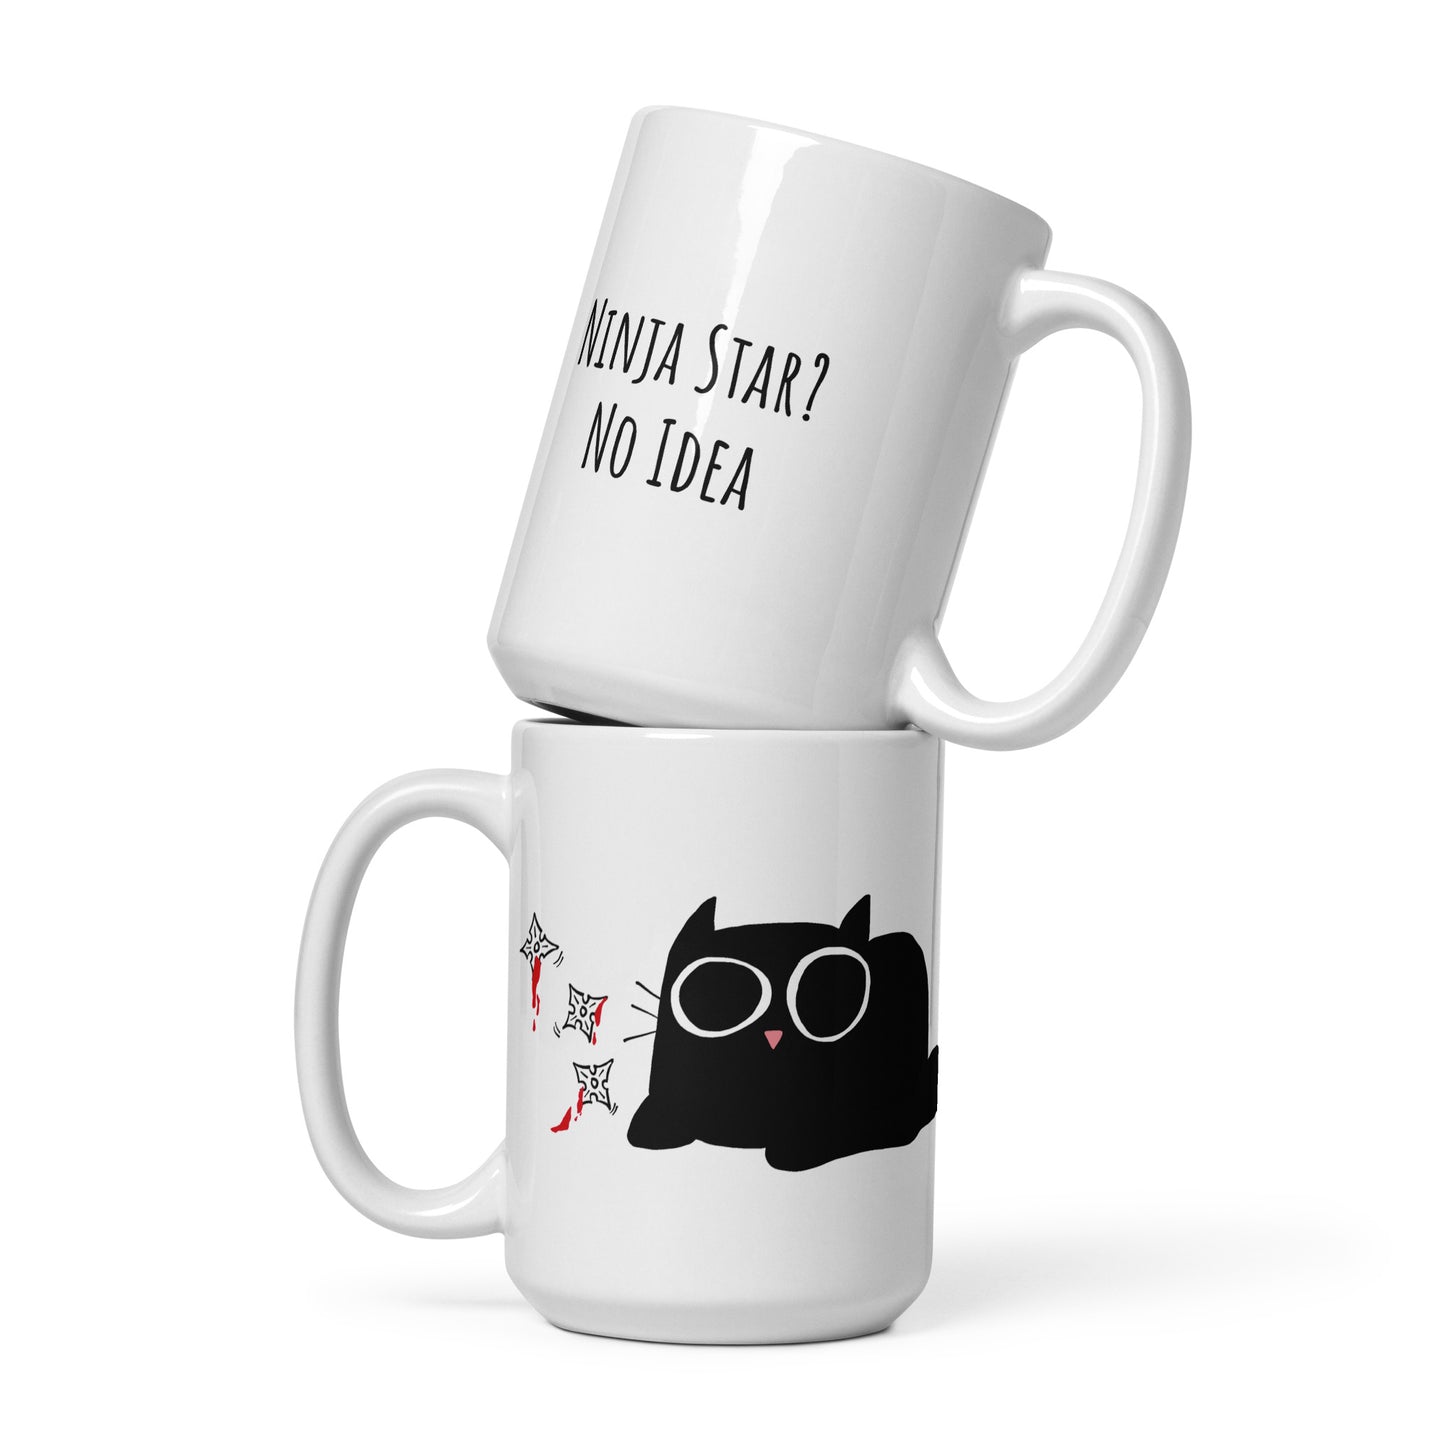 Ninja Star? No Idea - White glossy mug